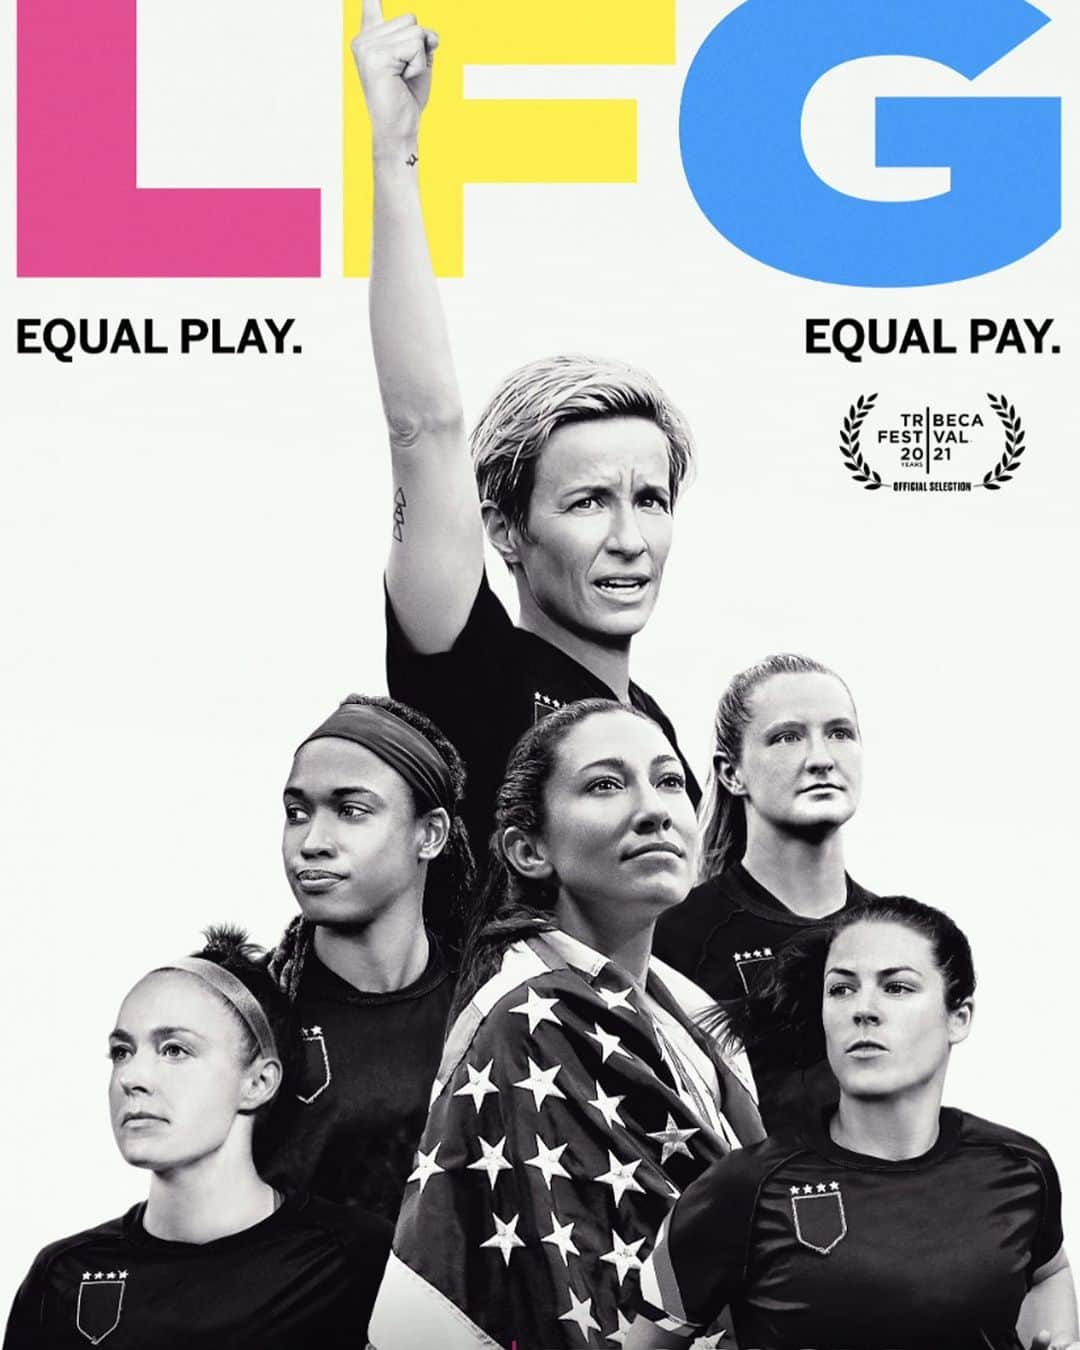 笹木香利のインスタグラム：「サッカー女子アメリカ代表のレジェンド、Megan Rapinoeが今年限りでの引退を発表しました。  初めて彼女を観た時に感じた、ずば抜けたカリスマ性。 この『LFG』という映画では、彼女の強さ、美しさ、そして繊細さも描かれています。 ラピノーを筆頭に、立ち上がり、支え、共に戦うチームメイトの絆に、身体の中から湧き出てくる熱さのようなものを感じながら、涙しながら食い入るように観た映画でした。  彼女たちの闘いは彼女たちだけの為のものではなく、私たち、そして未来の子どもたちのための闘い。 この映画が映画館や配信でも、多くの人に見てもらえる機会が増えるといいなと思います。スポーツが好きな人はもちろん、そうでない人にも。  そしてもうすぐサッカー女子W杯が開催されます。 この映画で描かれるEQUAL PLAYのみならず、放映権の問題で試合を見られるかさえもわからない状態というのは悲しすぎる！！ なでしこJAPANの活躍はもちろんだし、ラピノーのプレーを見たいよ…  ※って投稿した直後に、NHKでの日本戦放送決定の発表がありましたね！！よかった！！！ 他国の他グループの試合も見られることを祈ってます…！  最後に、Megan Rapinoeのサッカー選手としてのキャリアが素晴らしい締めくくりになることを、そしてこの先の人生がもっと素晴らしいものになることを応援しています。  This movie was really wonderful. I hope Megan Rapinoe's career as a soccer player will be a wonderful ending and her life in the future will be even greater!! @mrapinoe」